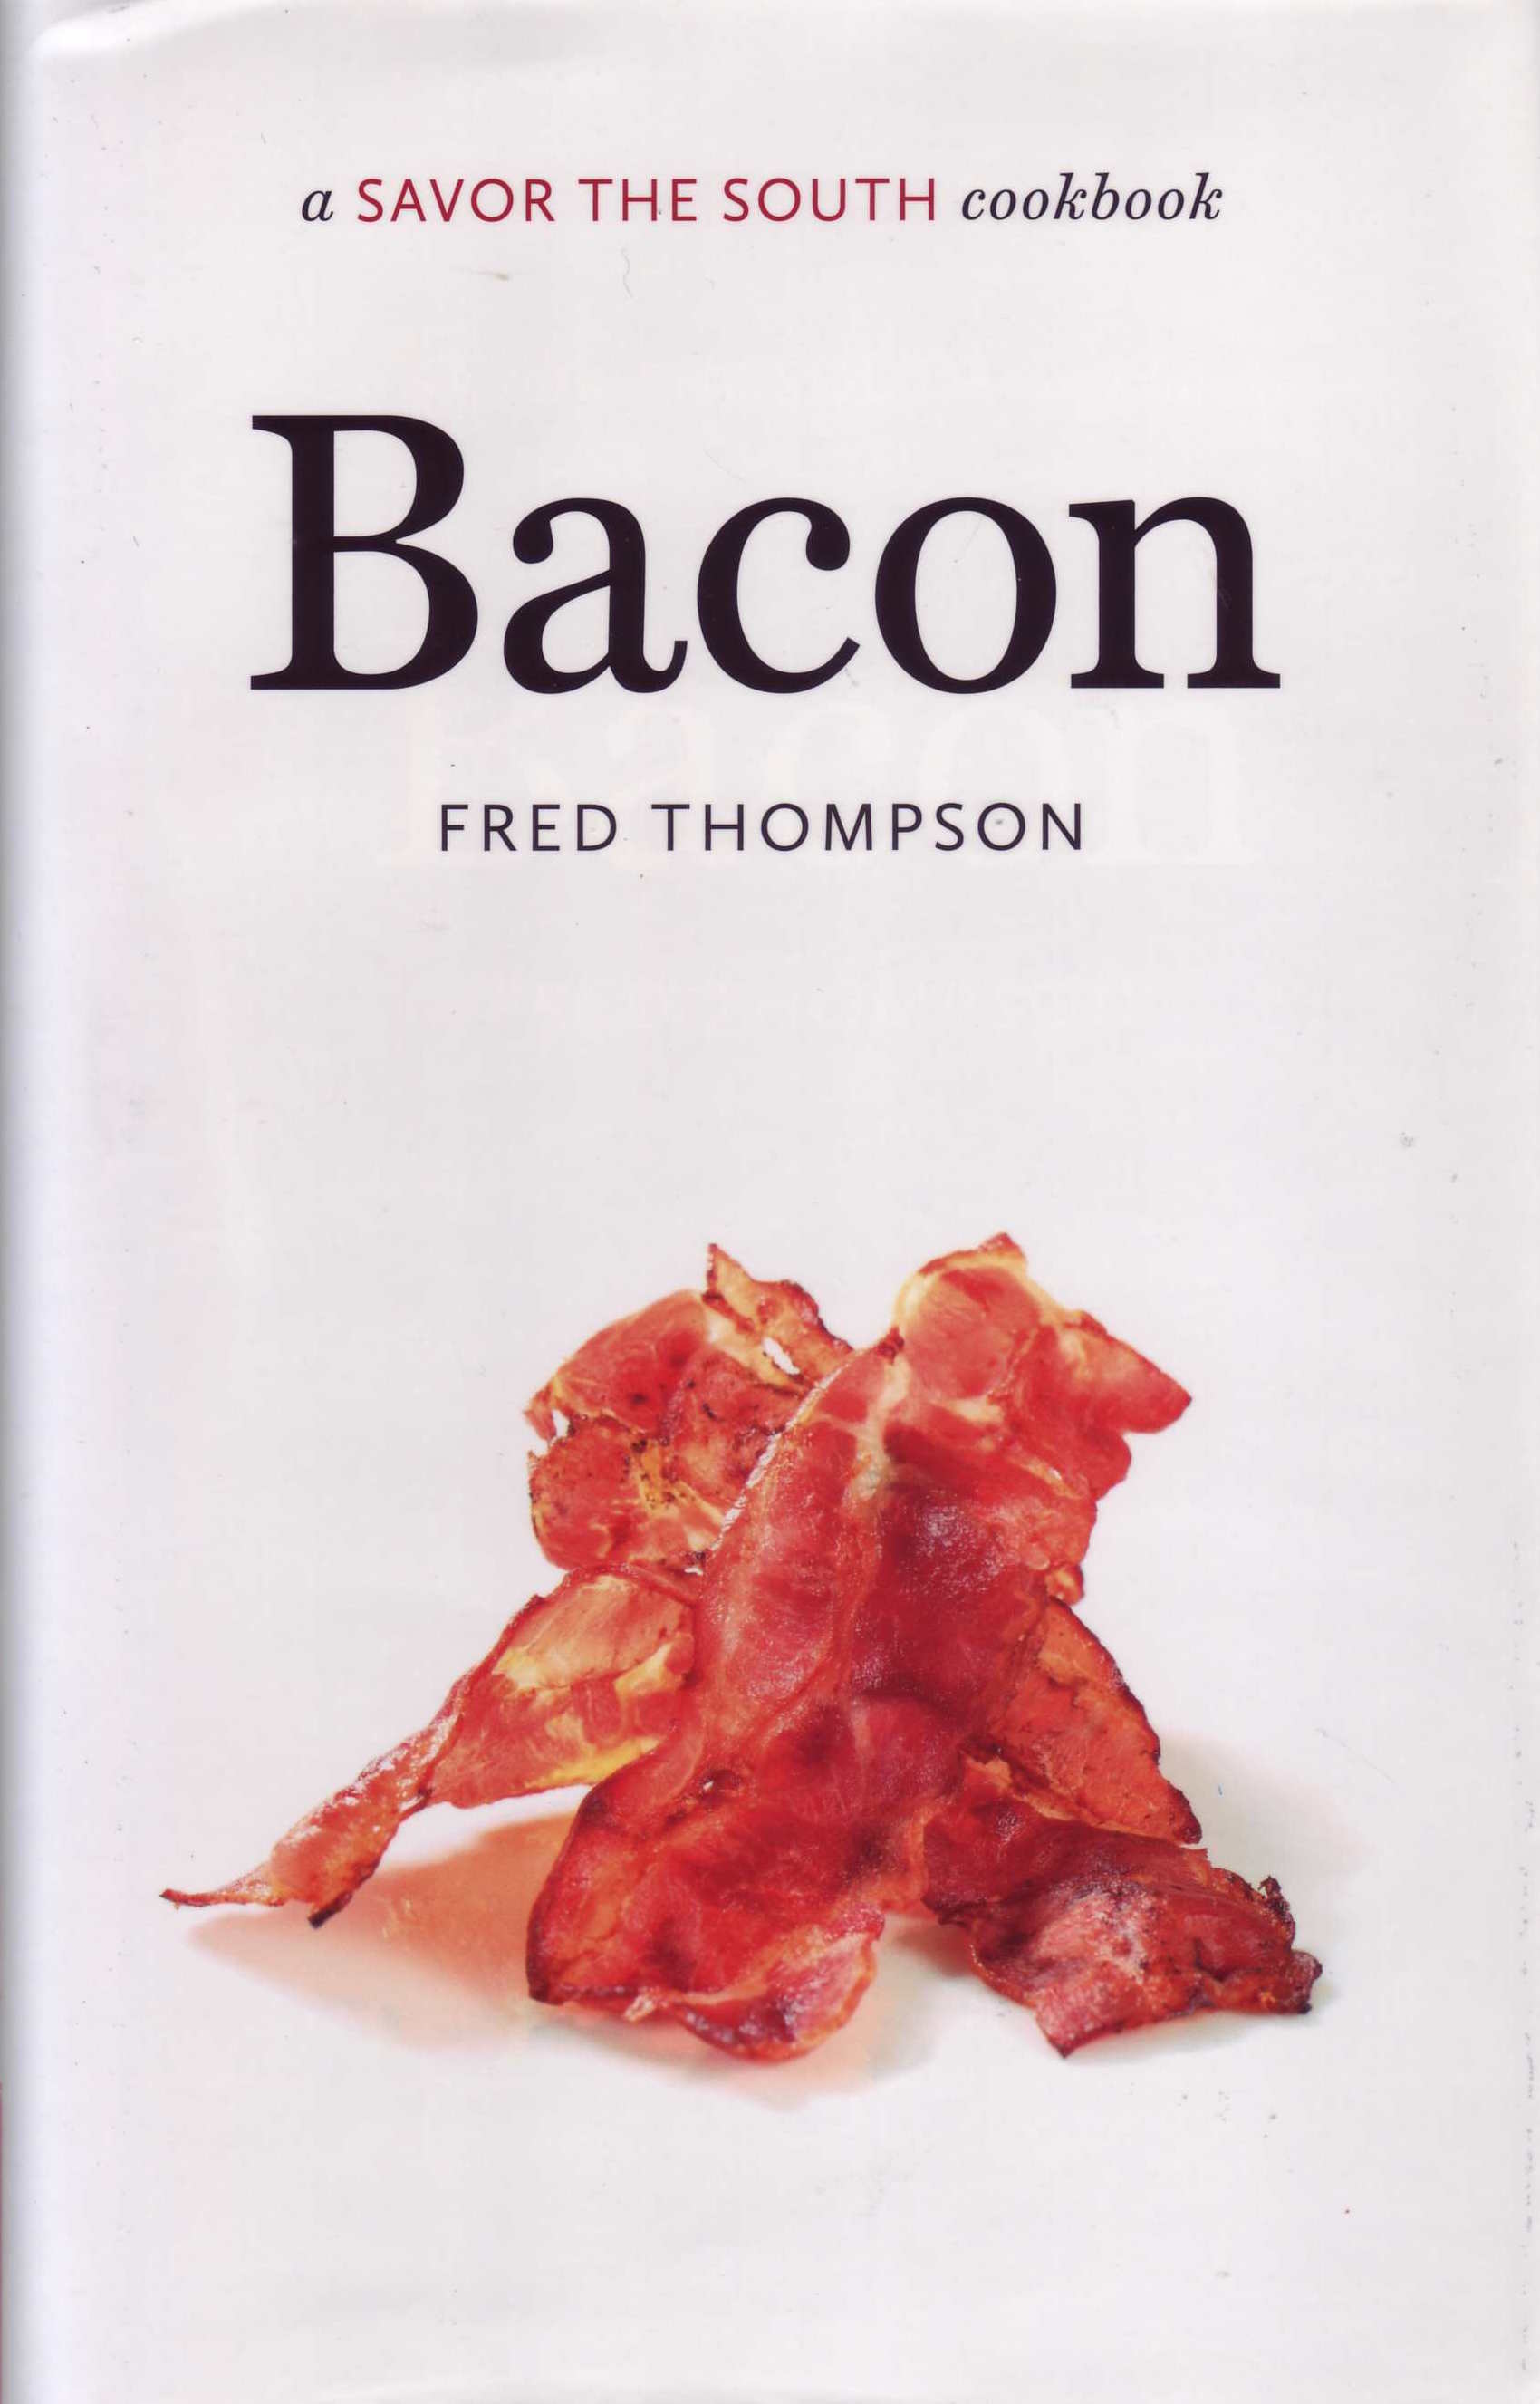 Bacon cover